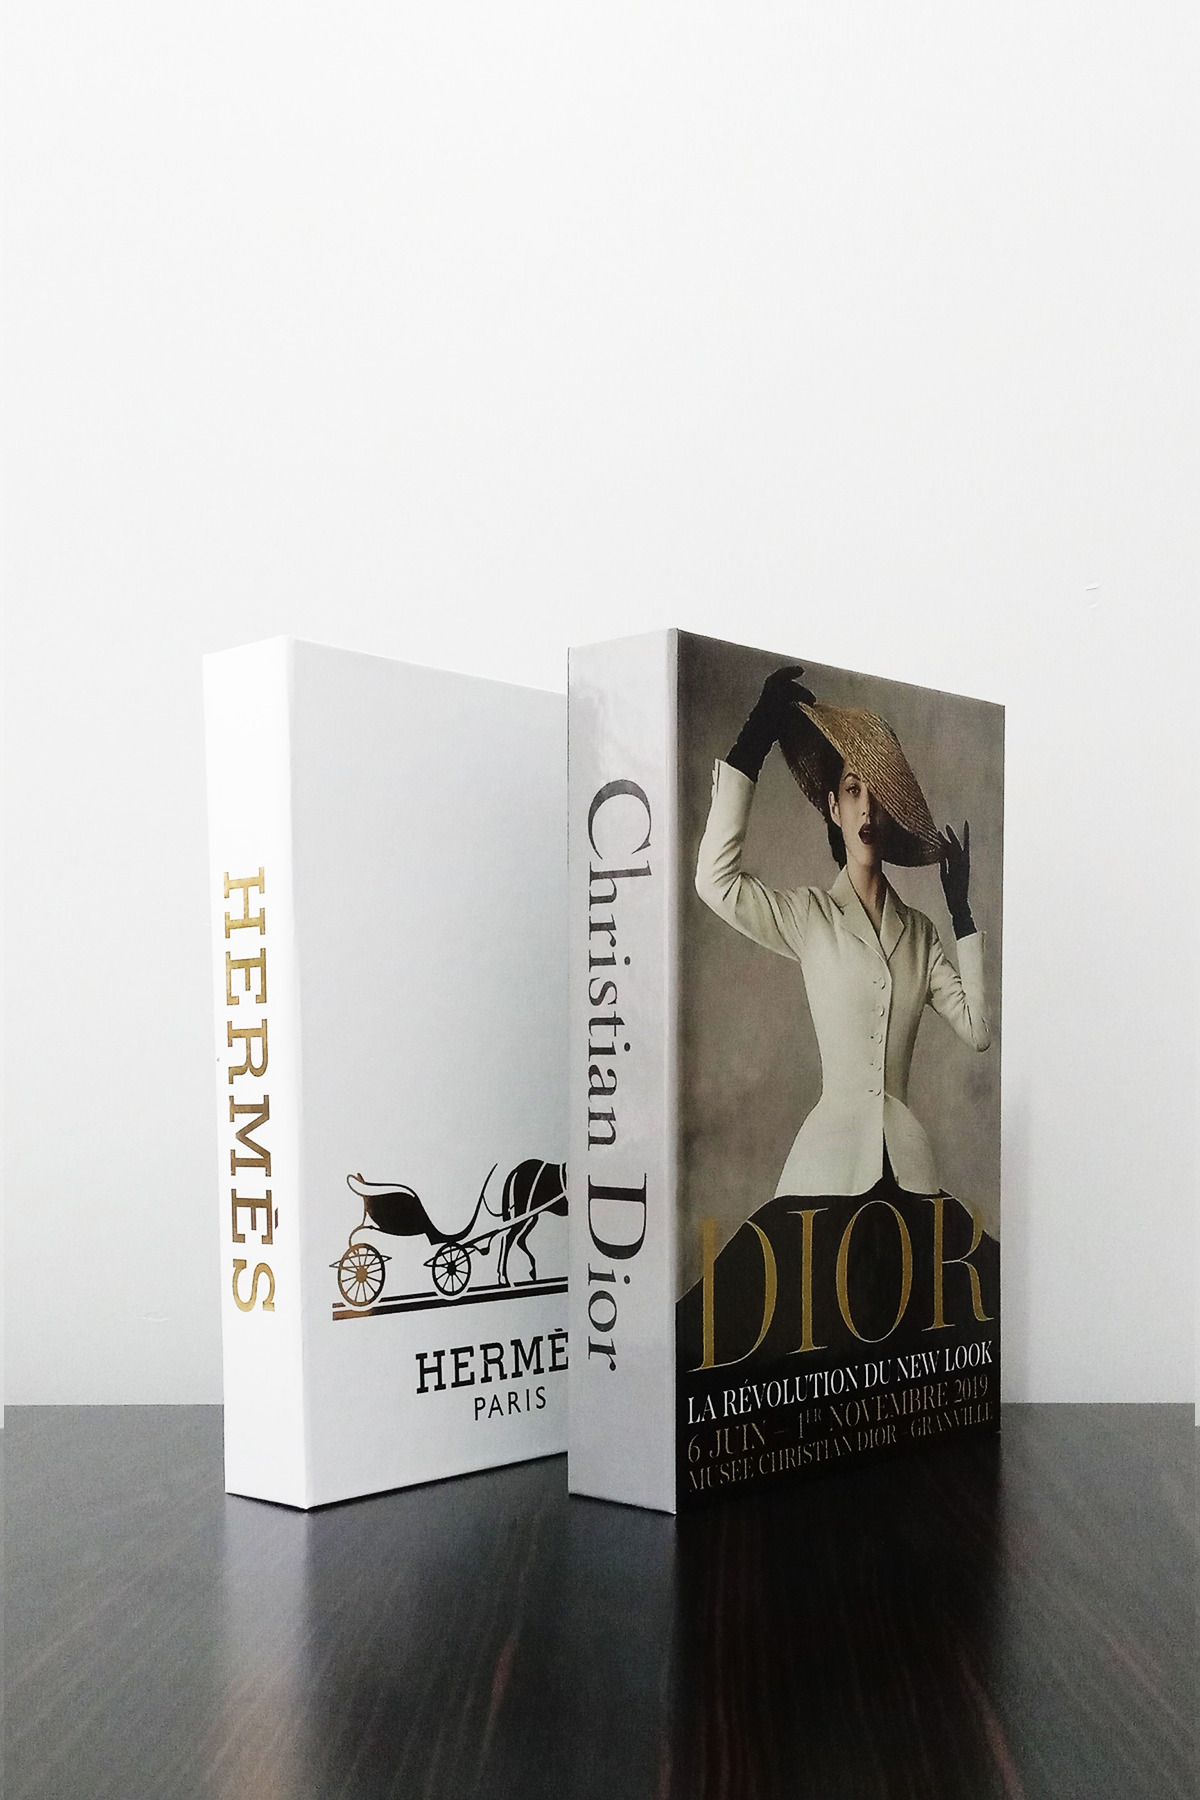 BayCazip 2'li Dekoratif Kitap Kutu Görünümlü Hermes Beyaz Yaldız & Dior Şapkalı Kadın Temalı